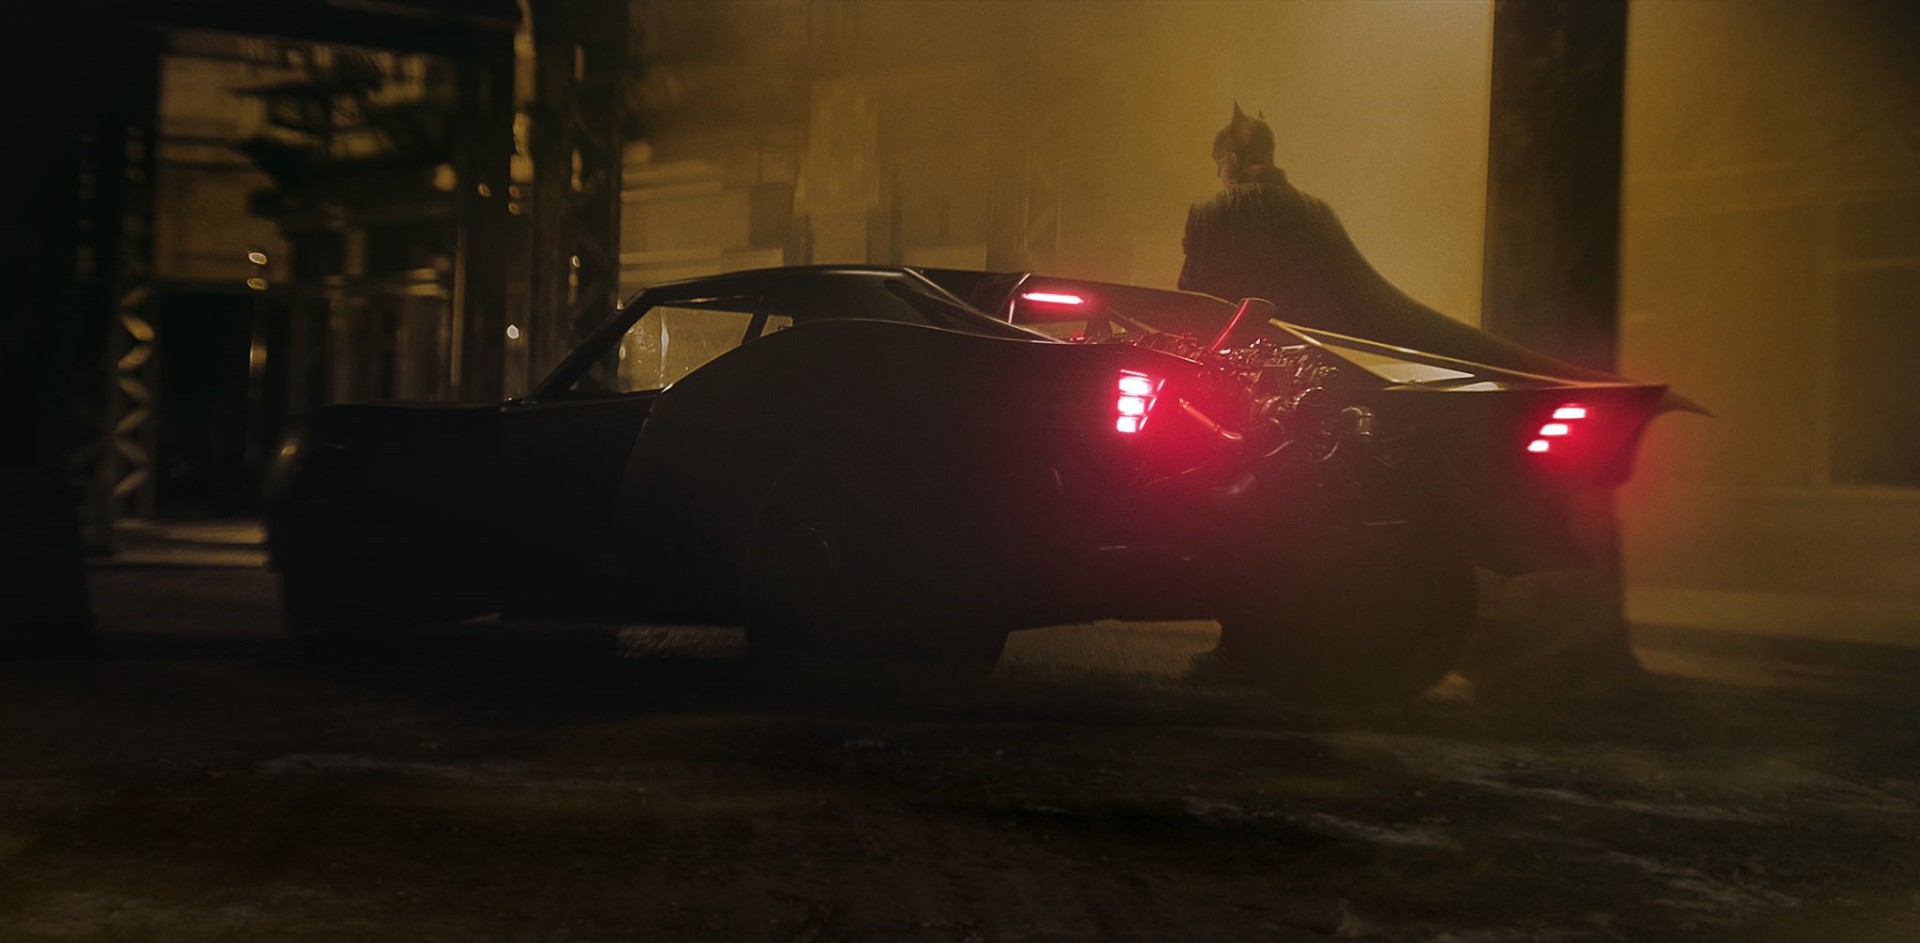 新《蝙蝠侠》蝙蝠车不俗里图 制型酷炫有复古已去感